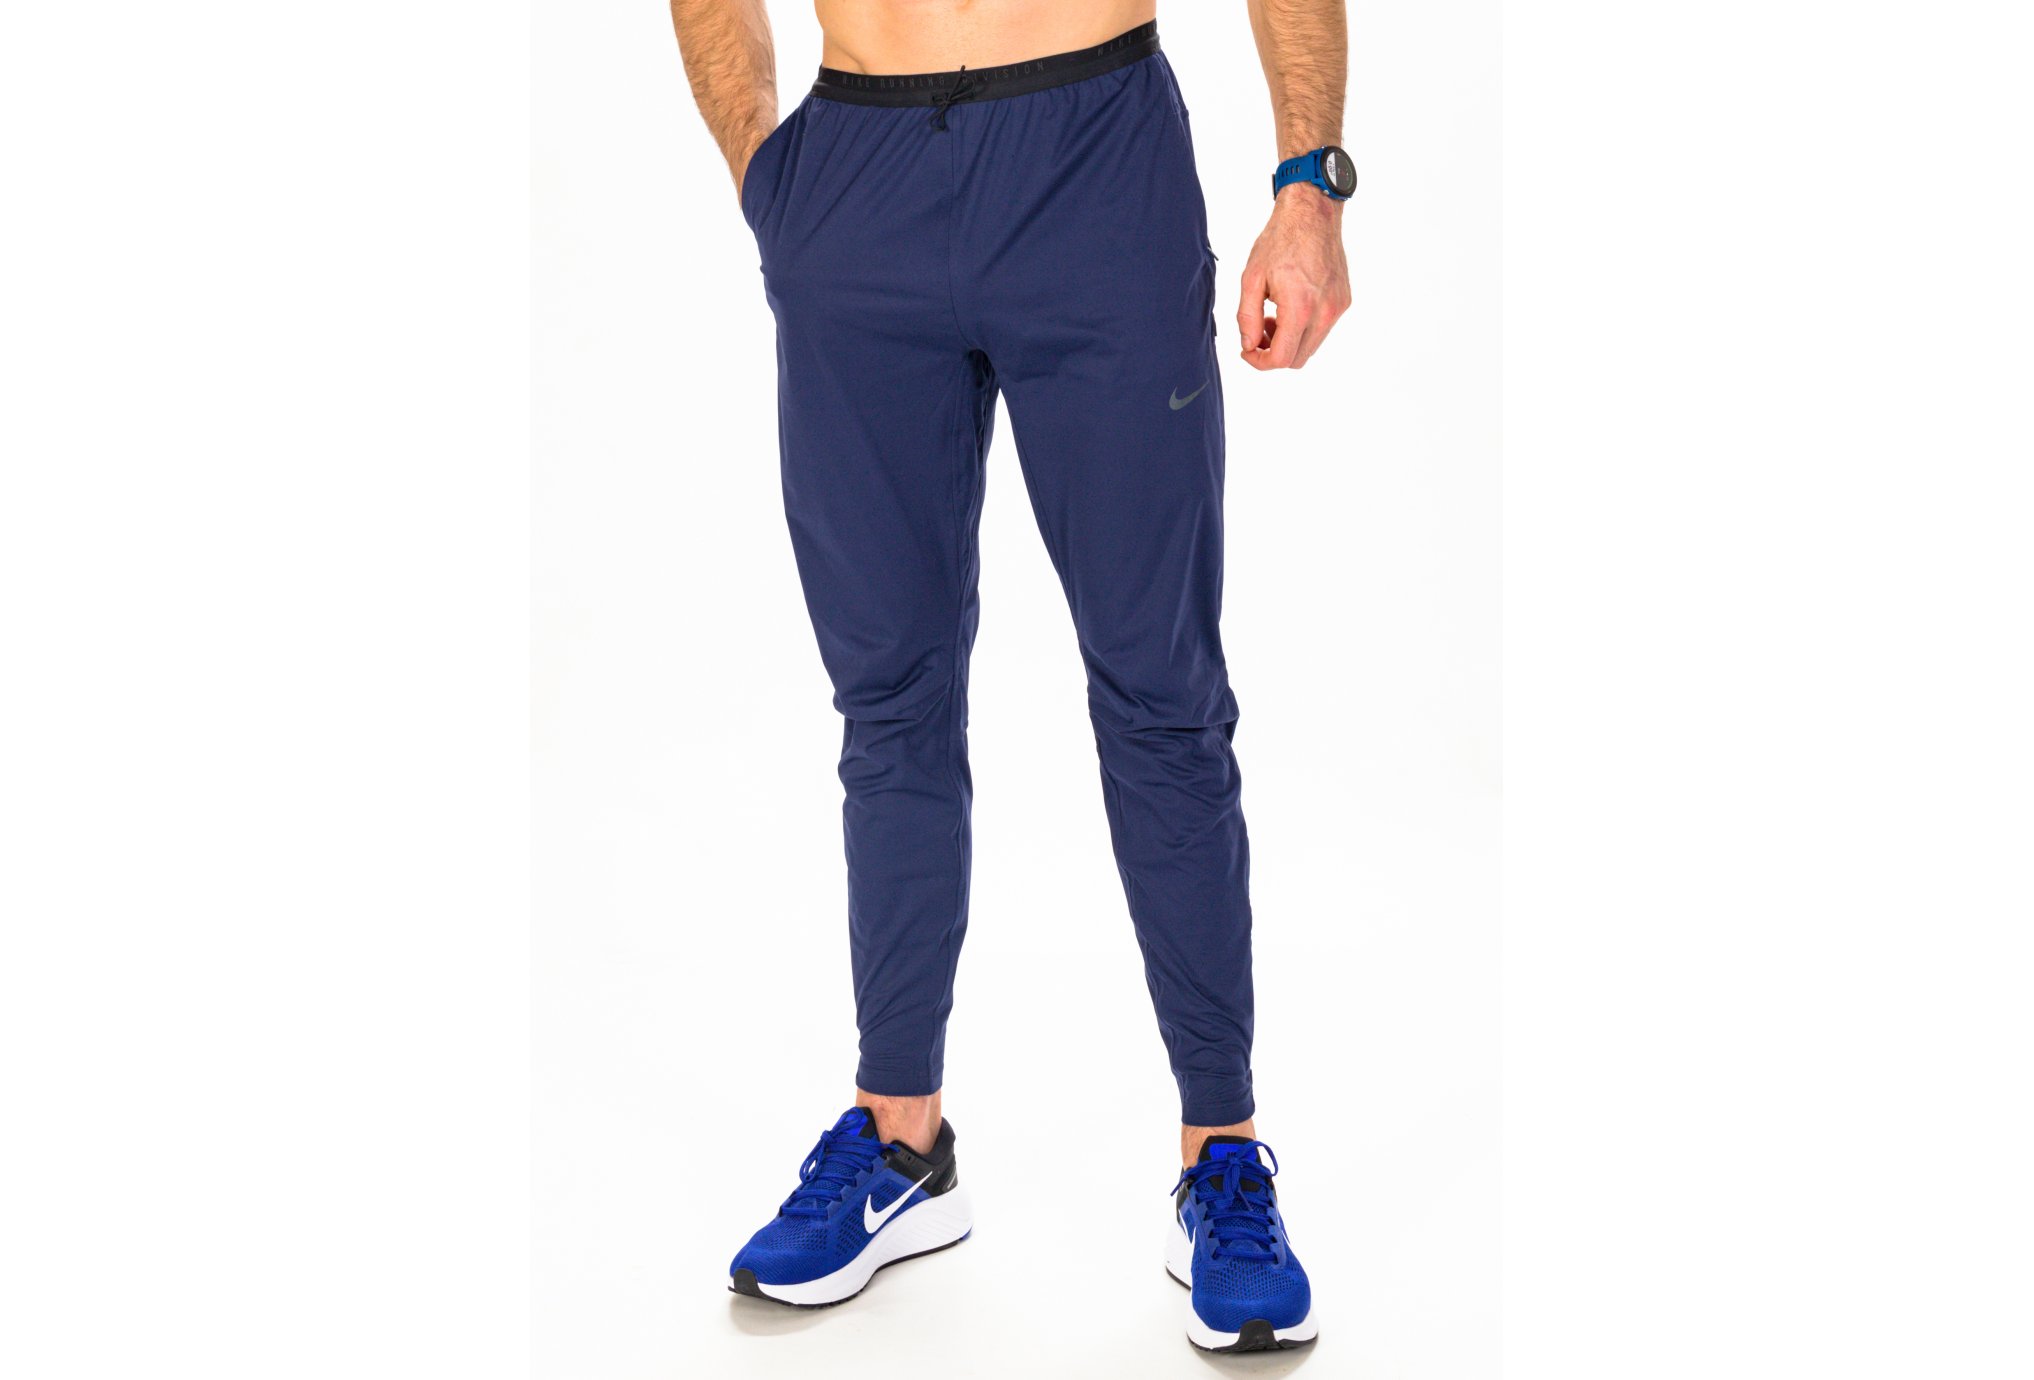 Pantalon de survêtement homme Nike Therma Fit - Coloris gris ou marine